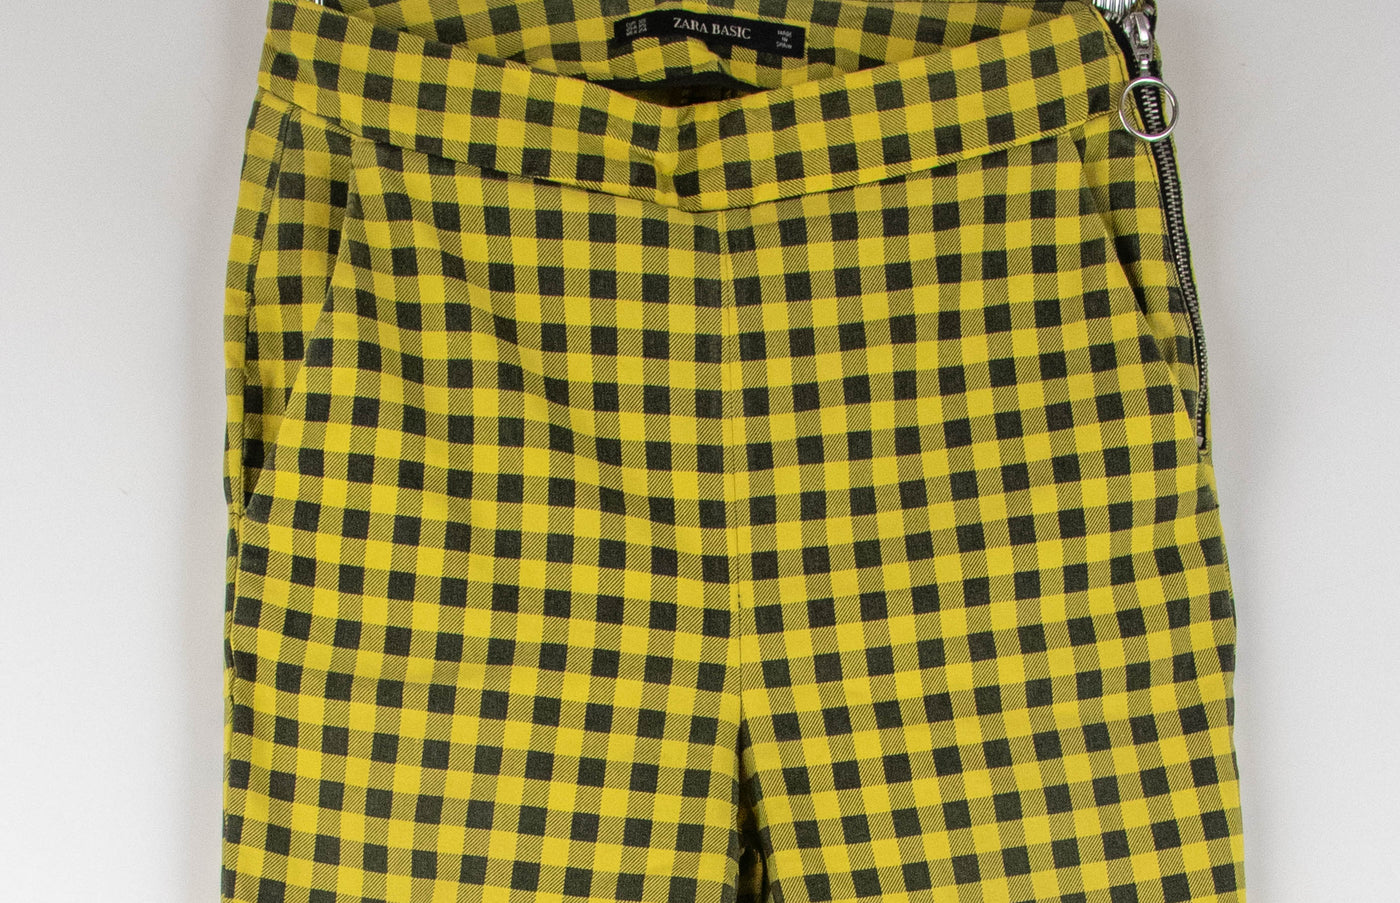 Pantalón cuadros amarillo y negro